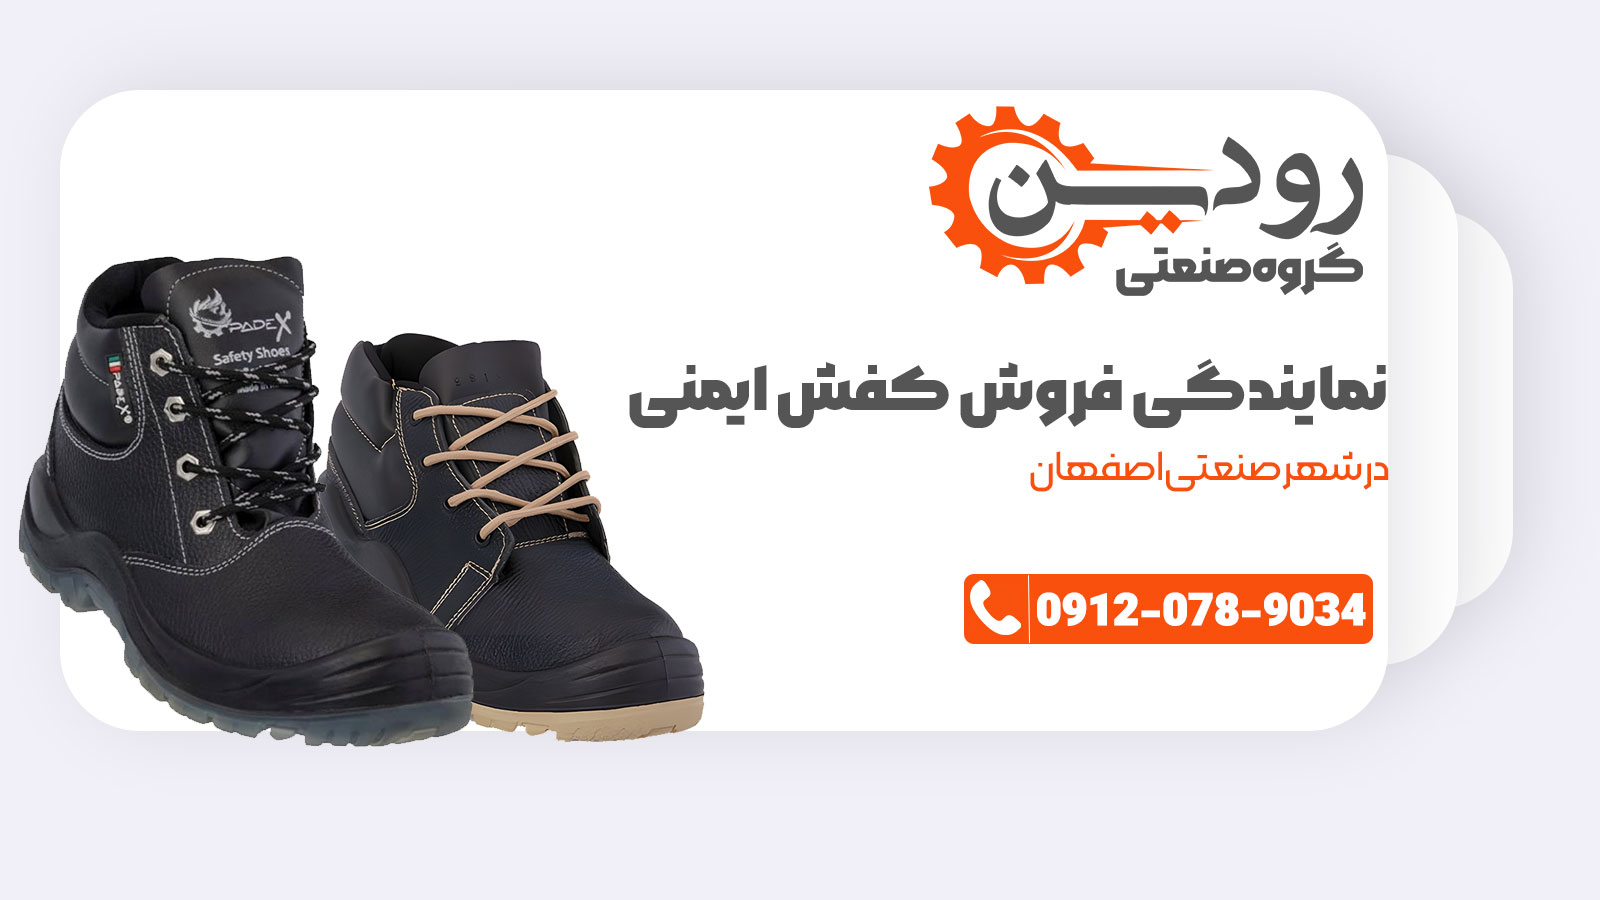 در شرکت فروش کفش ایمنی اصفهان قیمت های بسیار عالی به مشتری داده میشود.